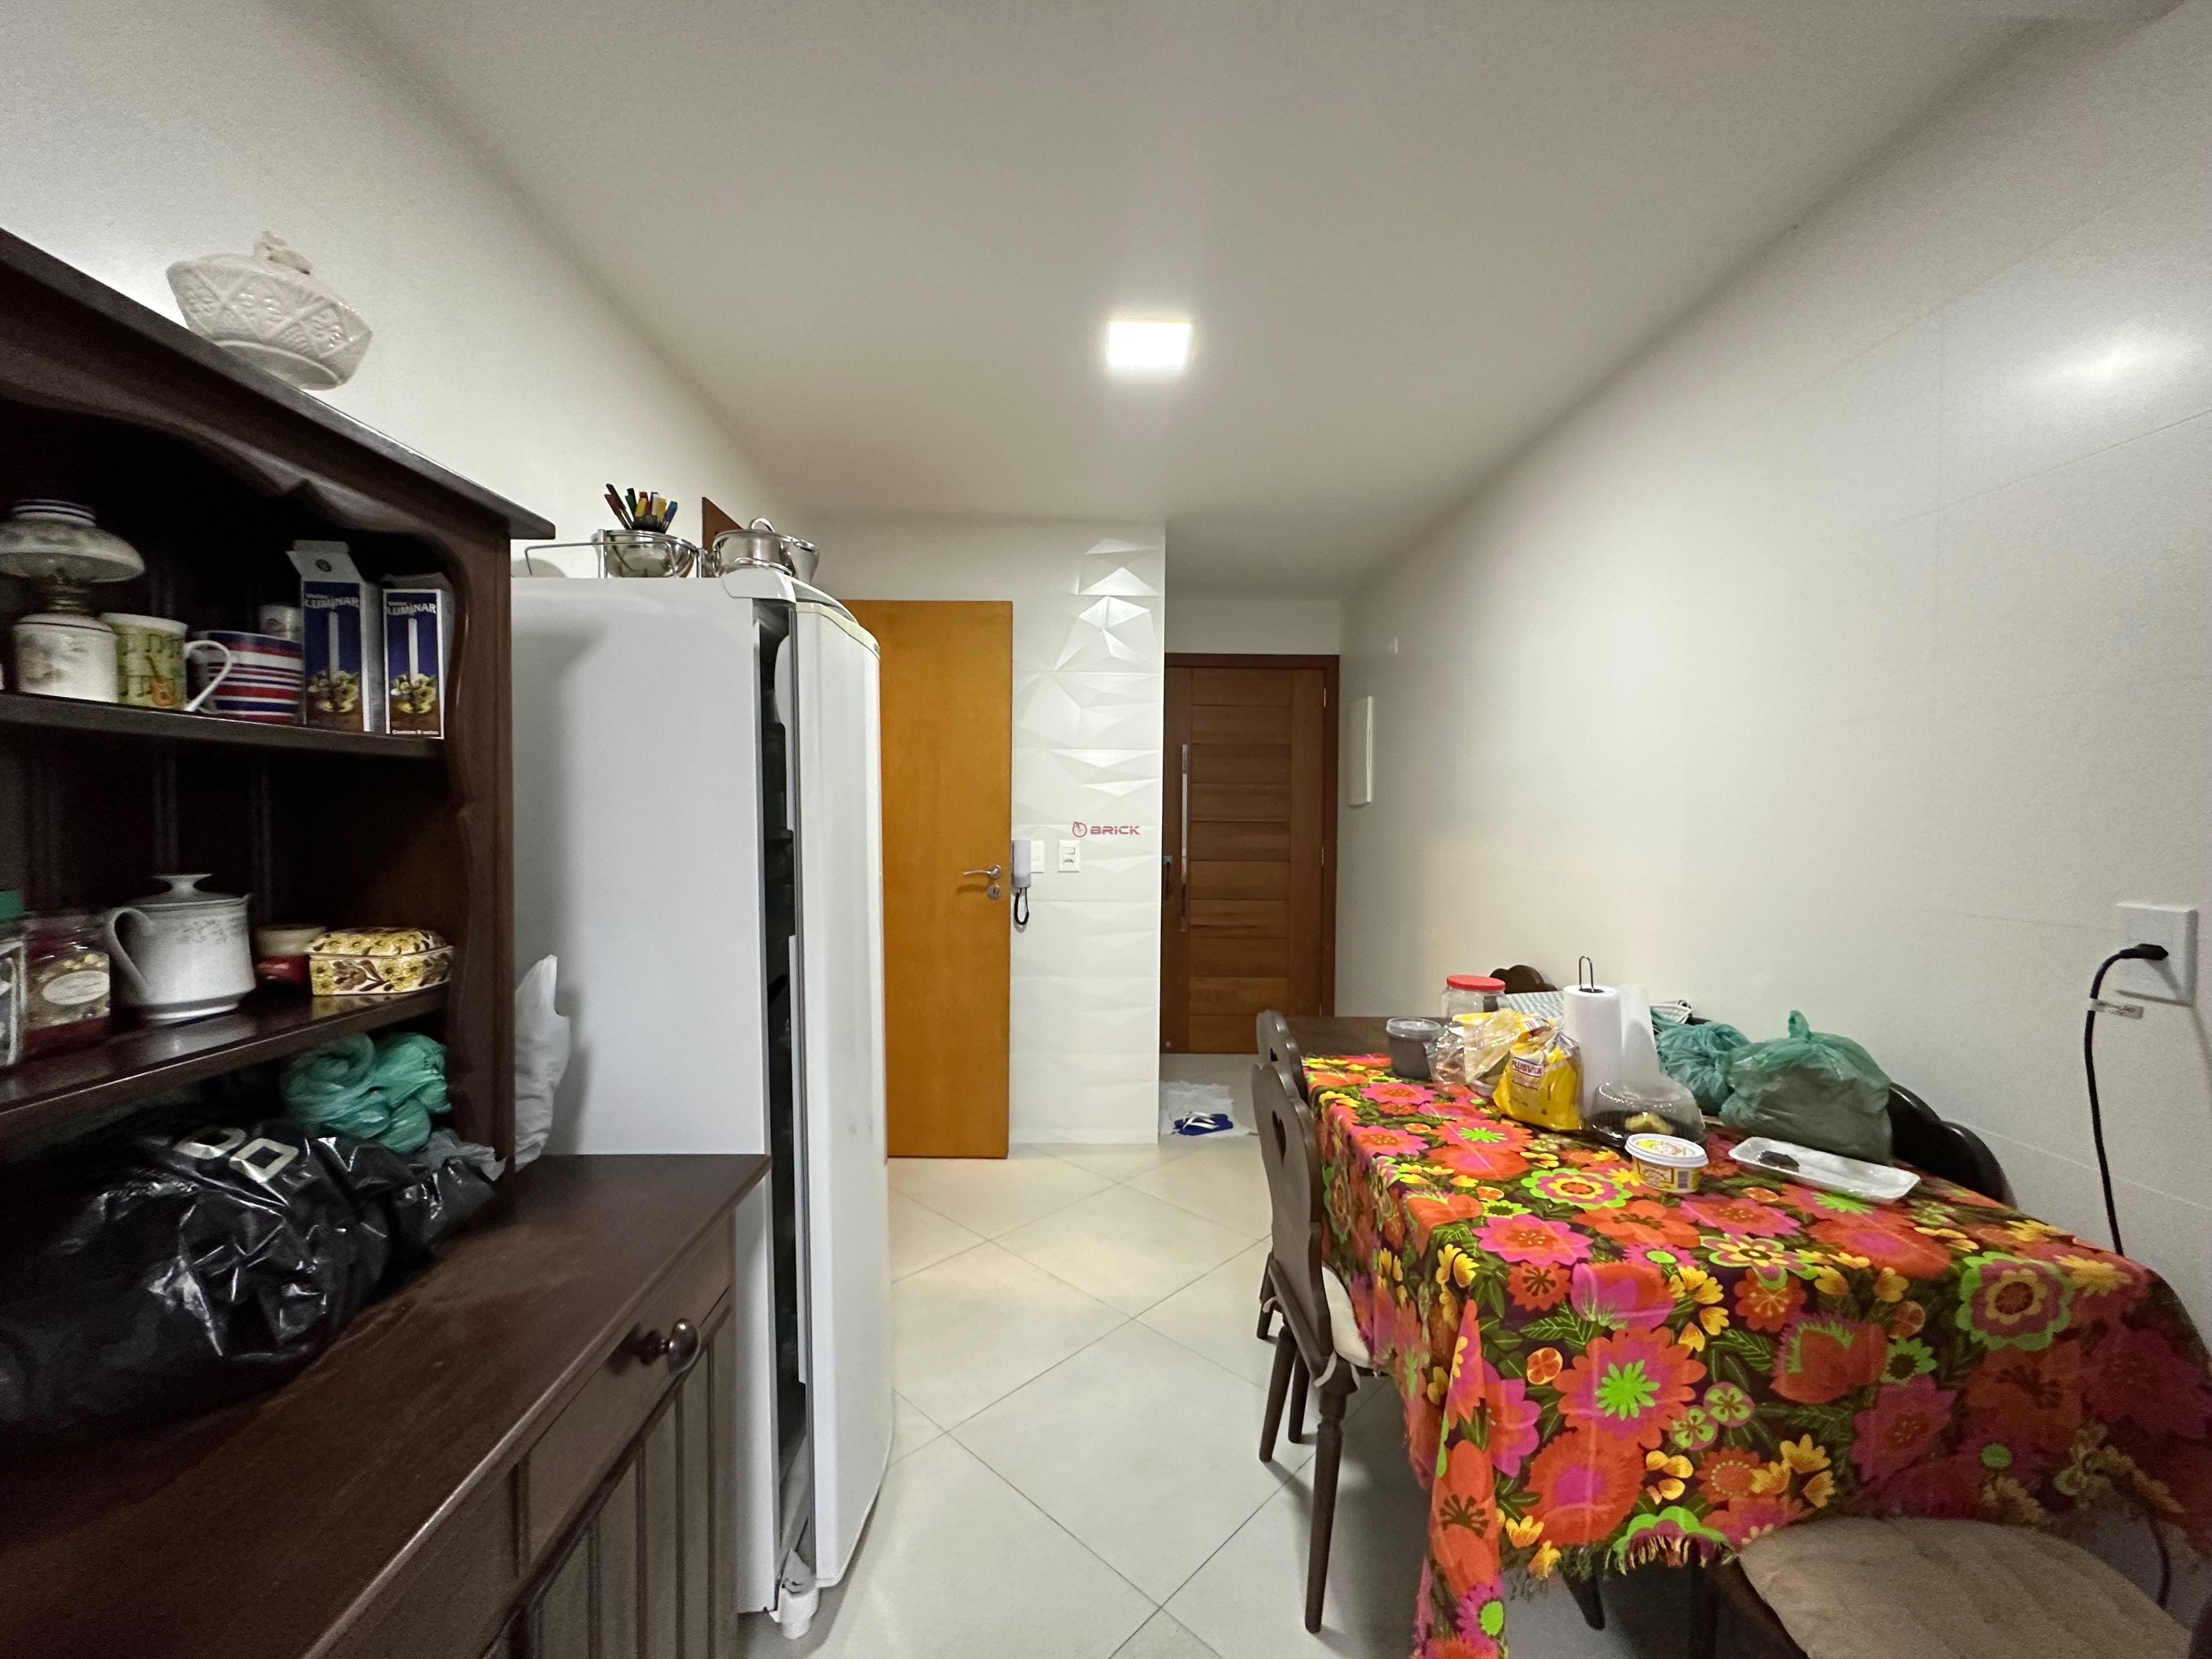 Apartamento à venda em Alto, Teresópolis - RJ - Foto 21